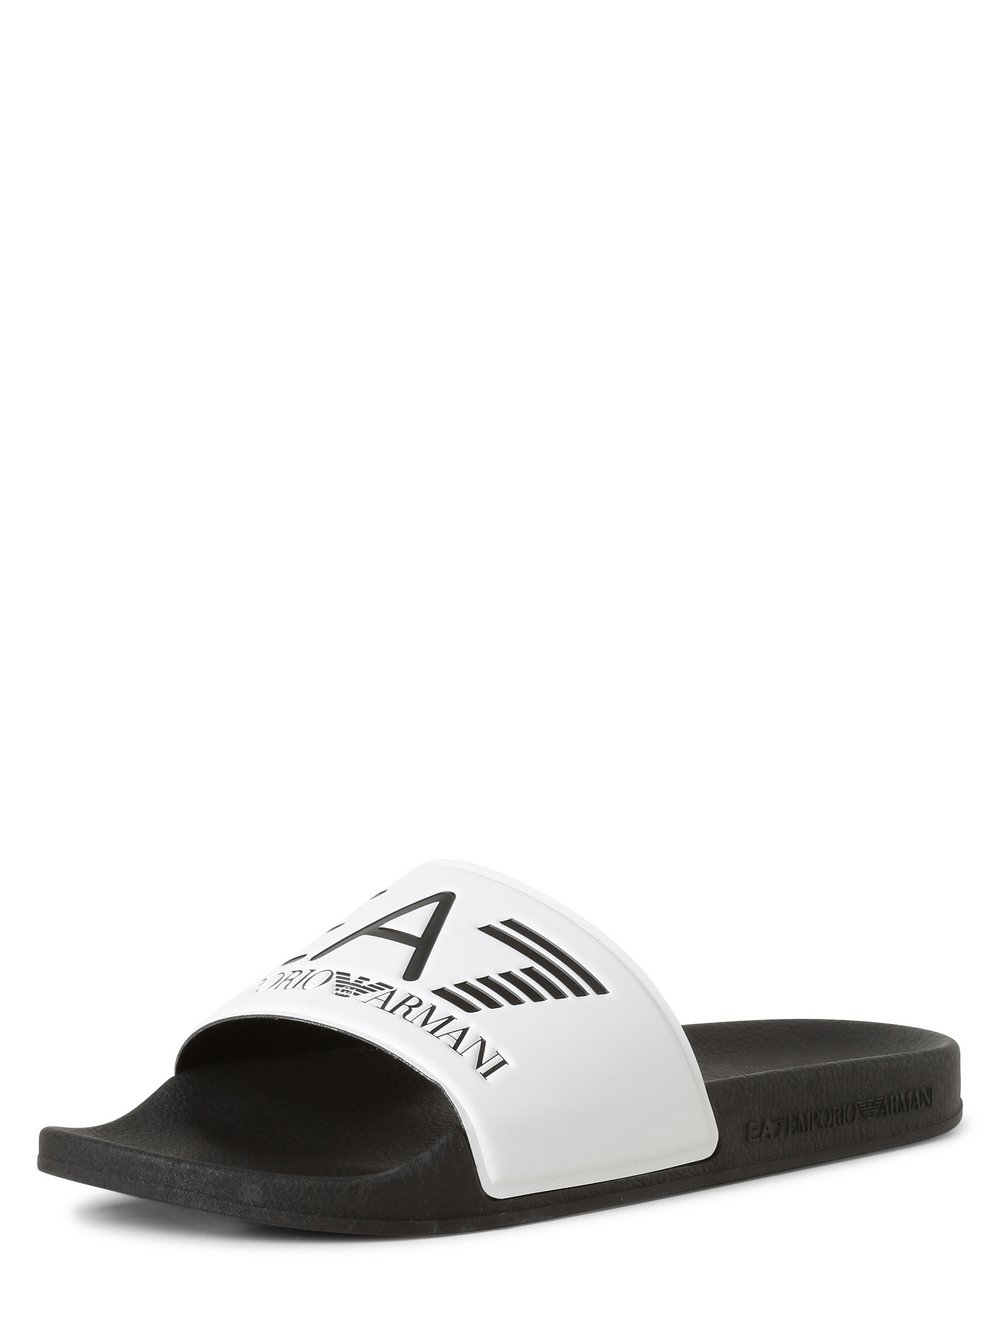 EA7 Emporio Armani - męskie pantofle kąpielowe, czarny|biały